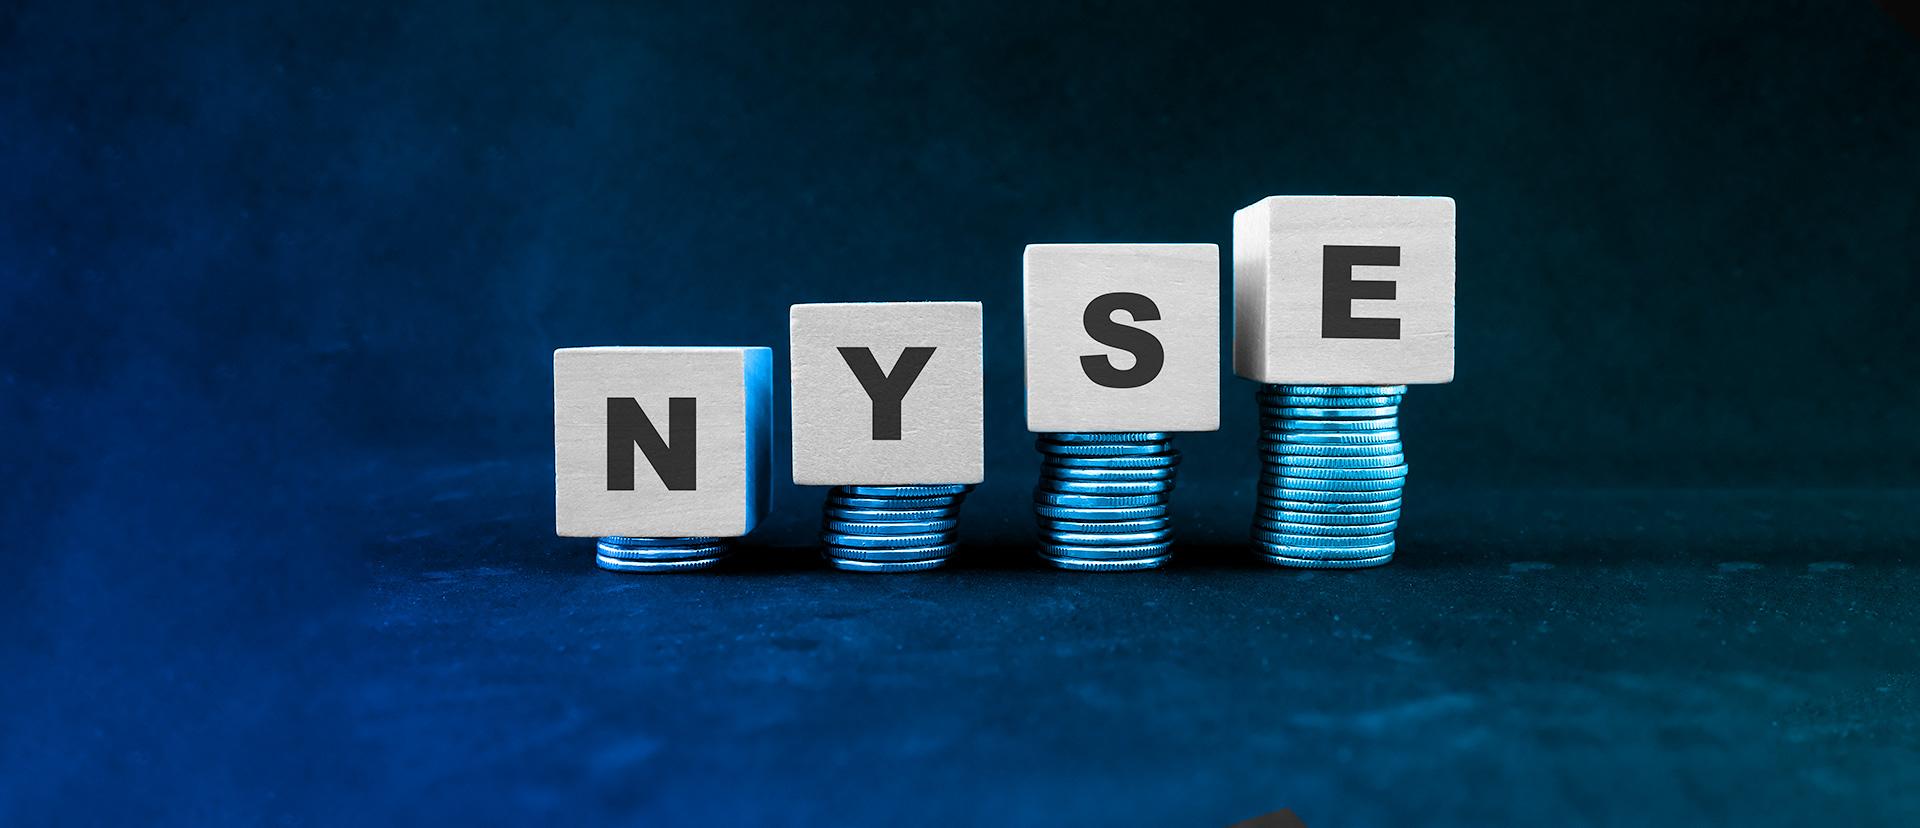 NYSE — Probably Main Stock Market